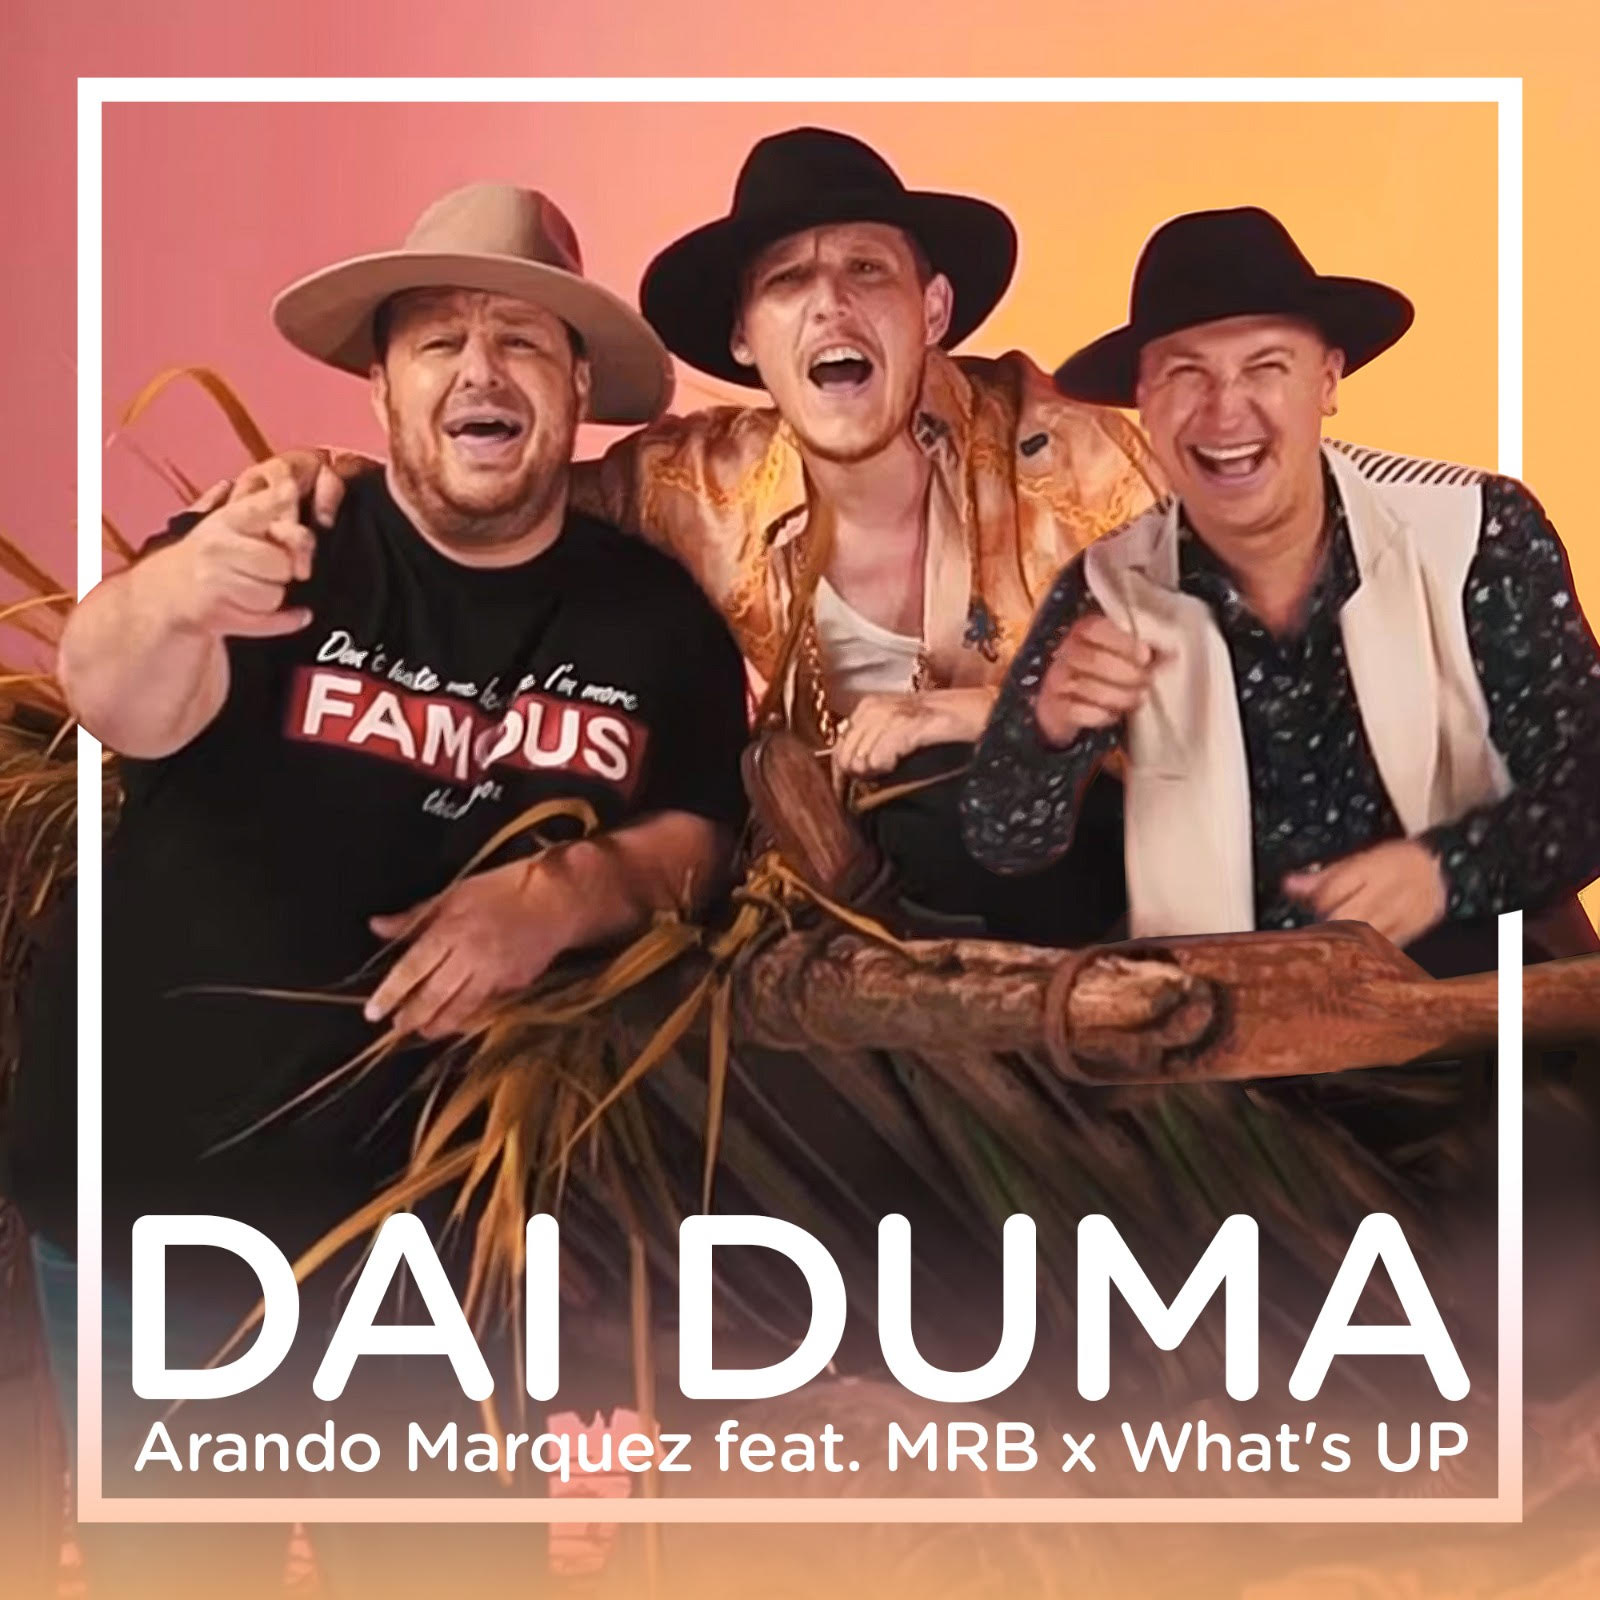 VIDEOCLIP NOU | Arando Marquez feat. MRB x What’s UP – DAI DUMA